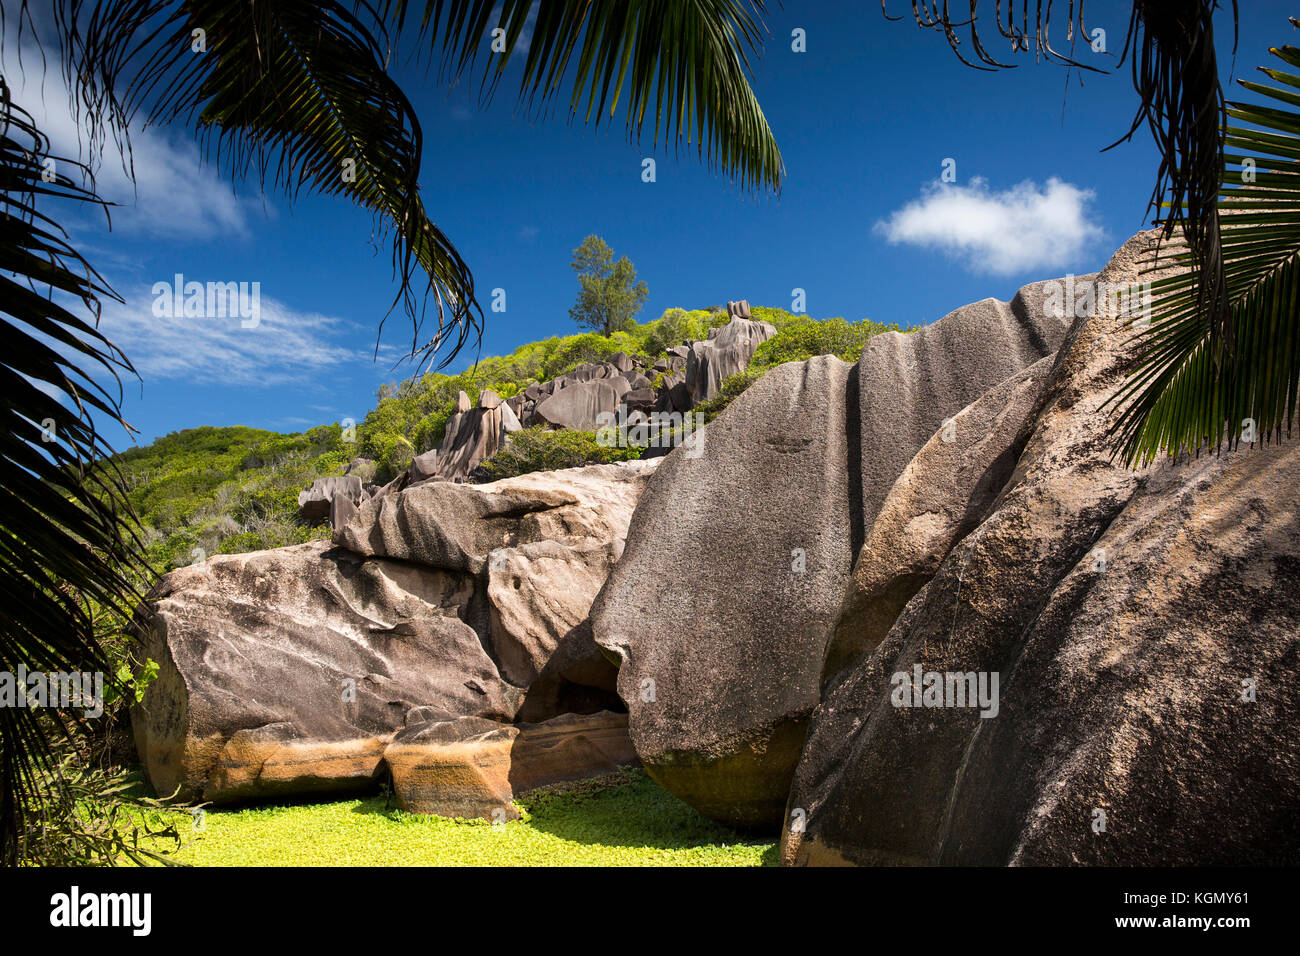 Las islas Seychelles, La Digue, Grand Anse, formación de rocas de granito erosionadas en la colina detrás de la playa Foto de stock